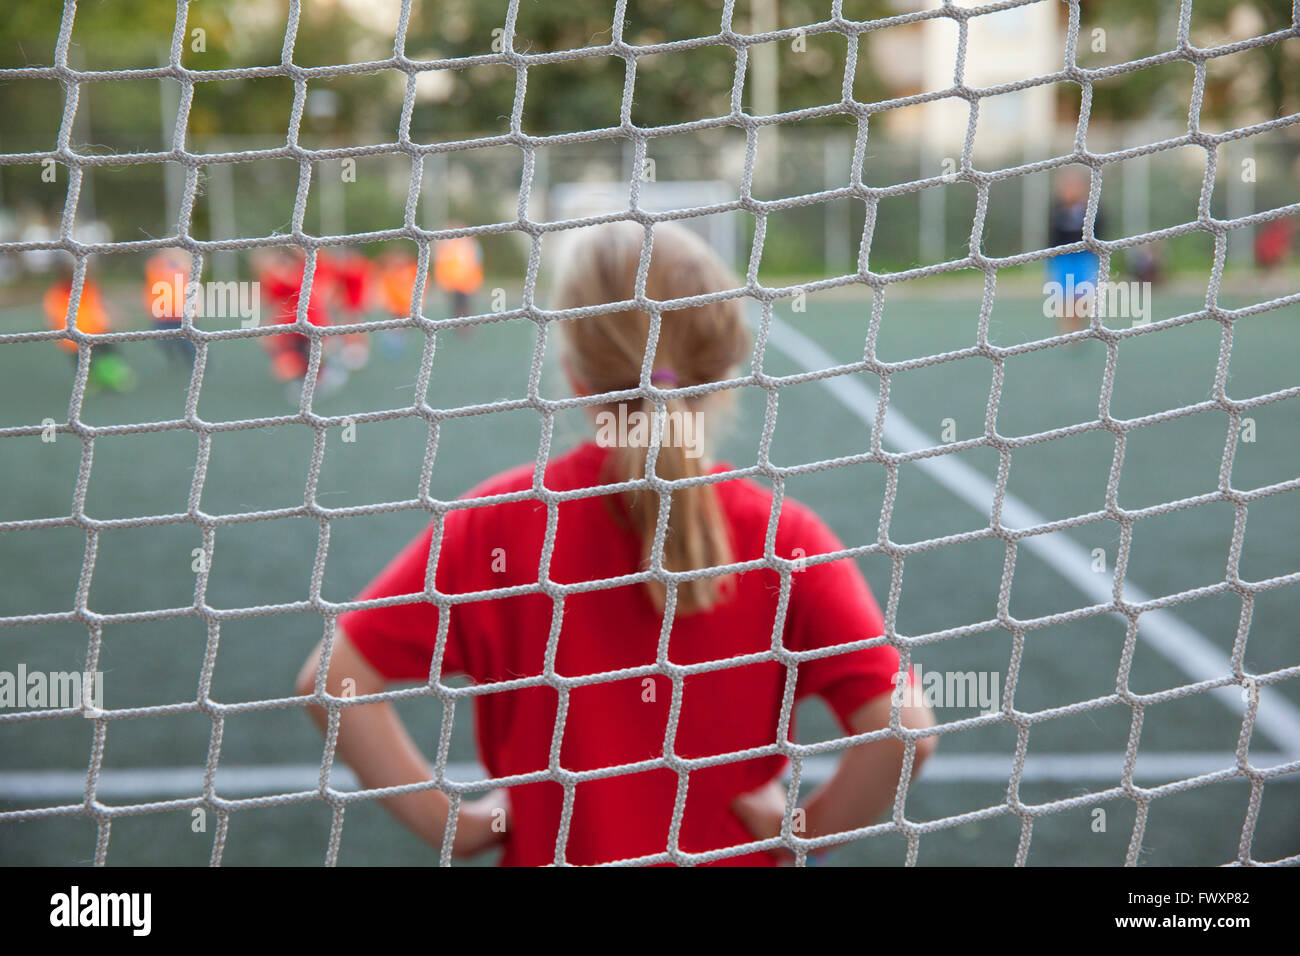 Suecia, Estocolmo, Sodermalm, Niños (6-7, 8-9, 10-11) jugando al fútbol Foto de stock